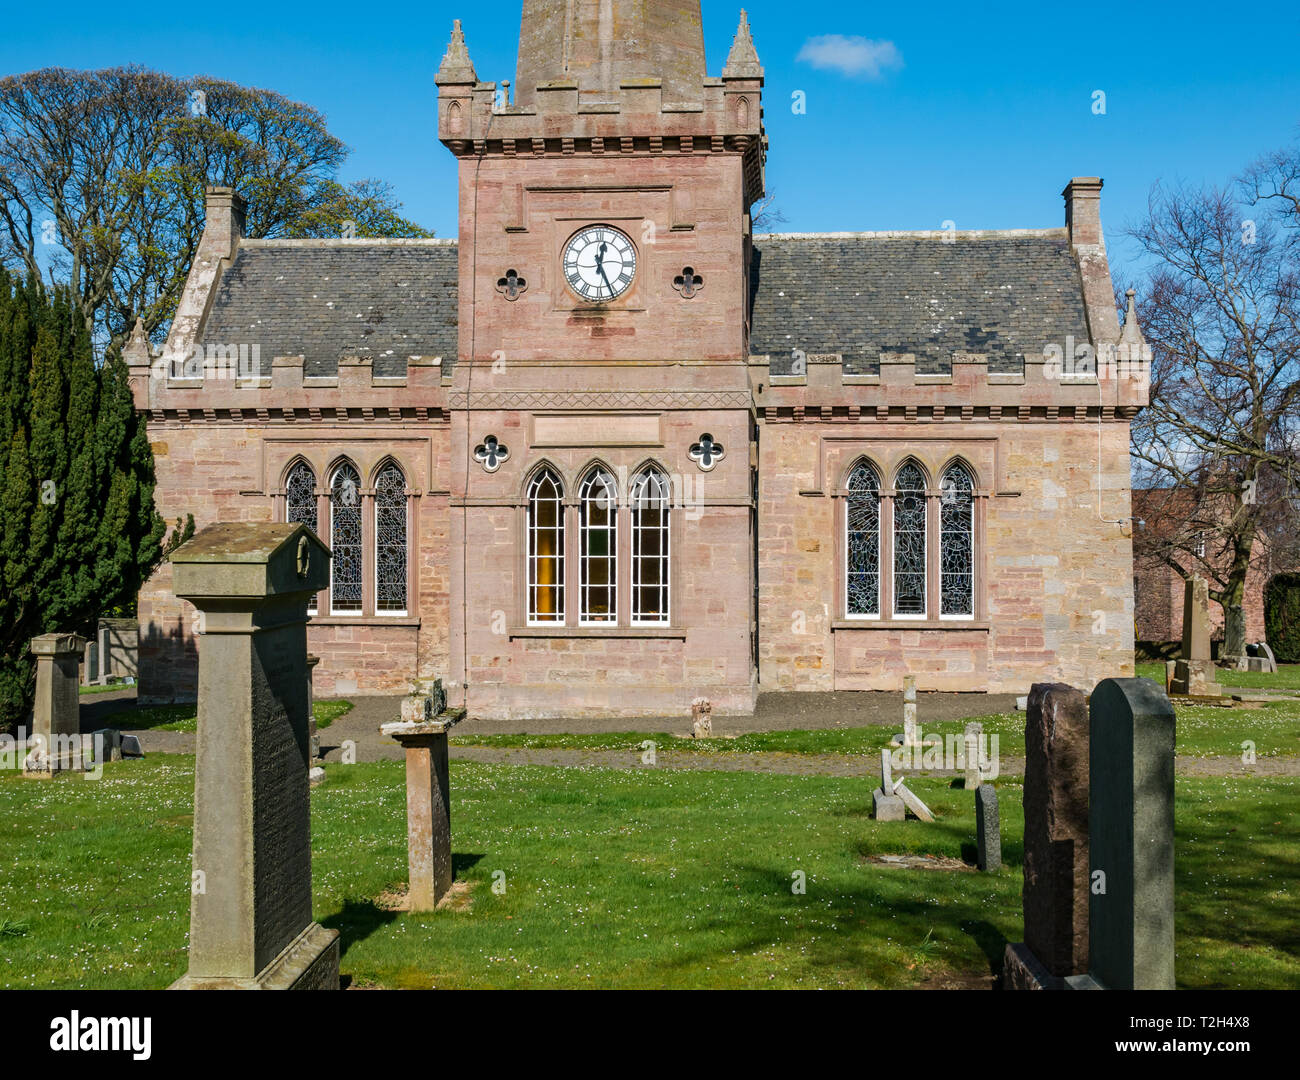 Malerischen Dorf, saltoun Pfarrkirche mit alten Grabsteinen in Kirchhof, East Saltoun, East Lothian, Schottland, Großbritannien Stockfoto